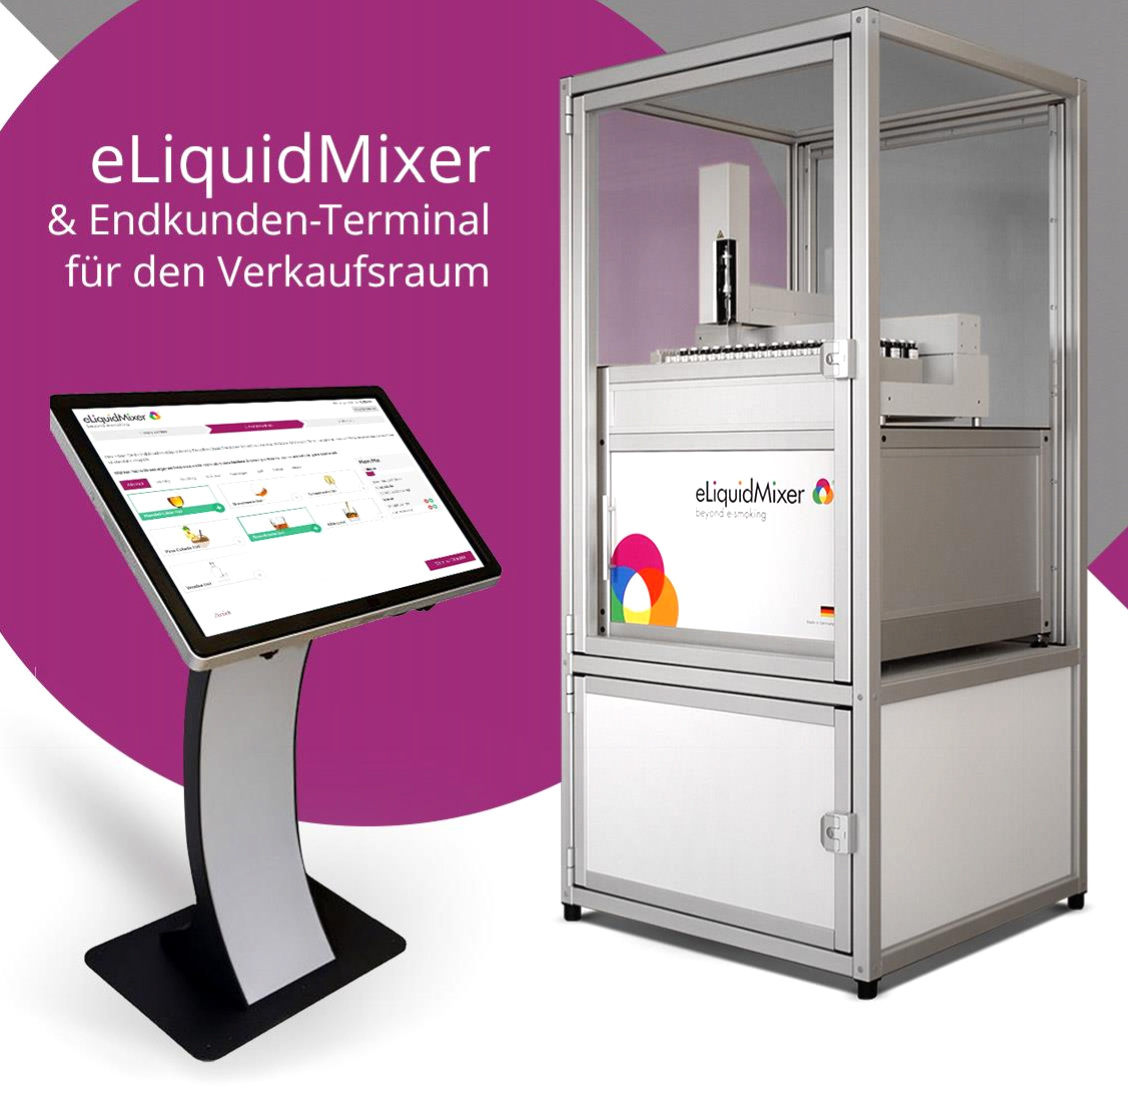 eLiquidMixer GmbH bietet easy pc stand Kioskterminal und passenden Mischroboter